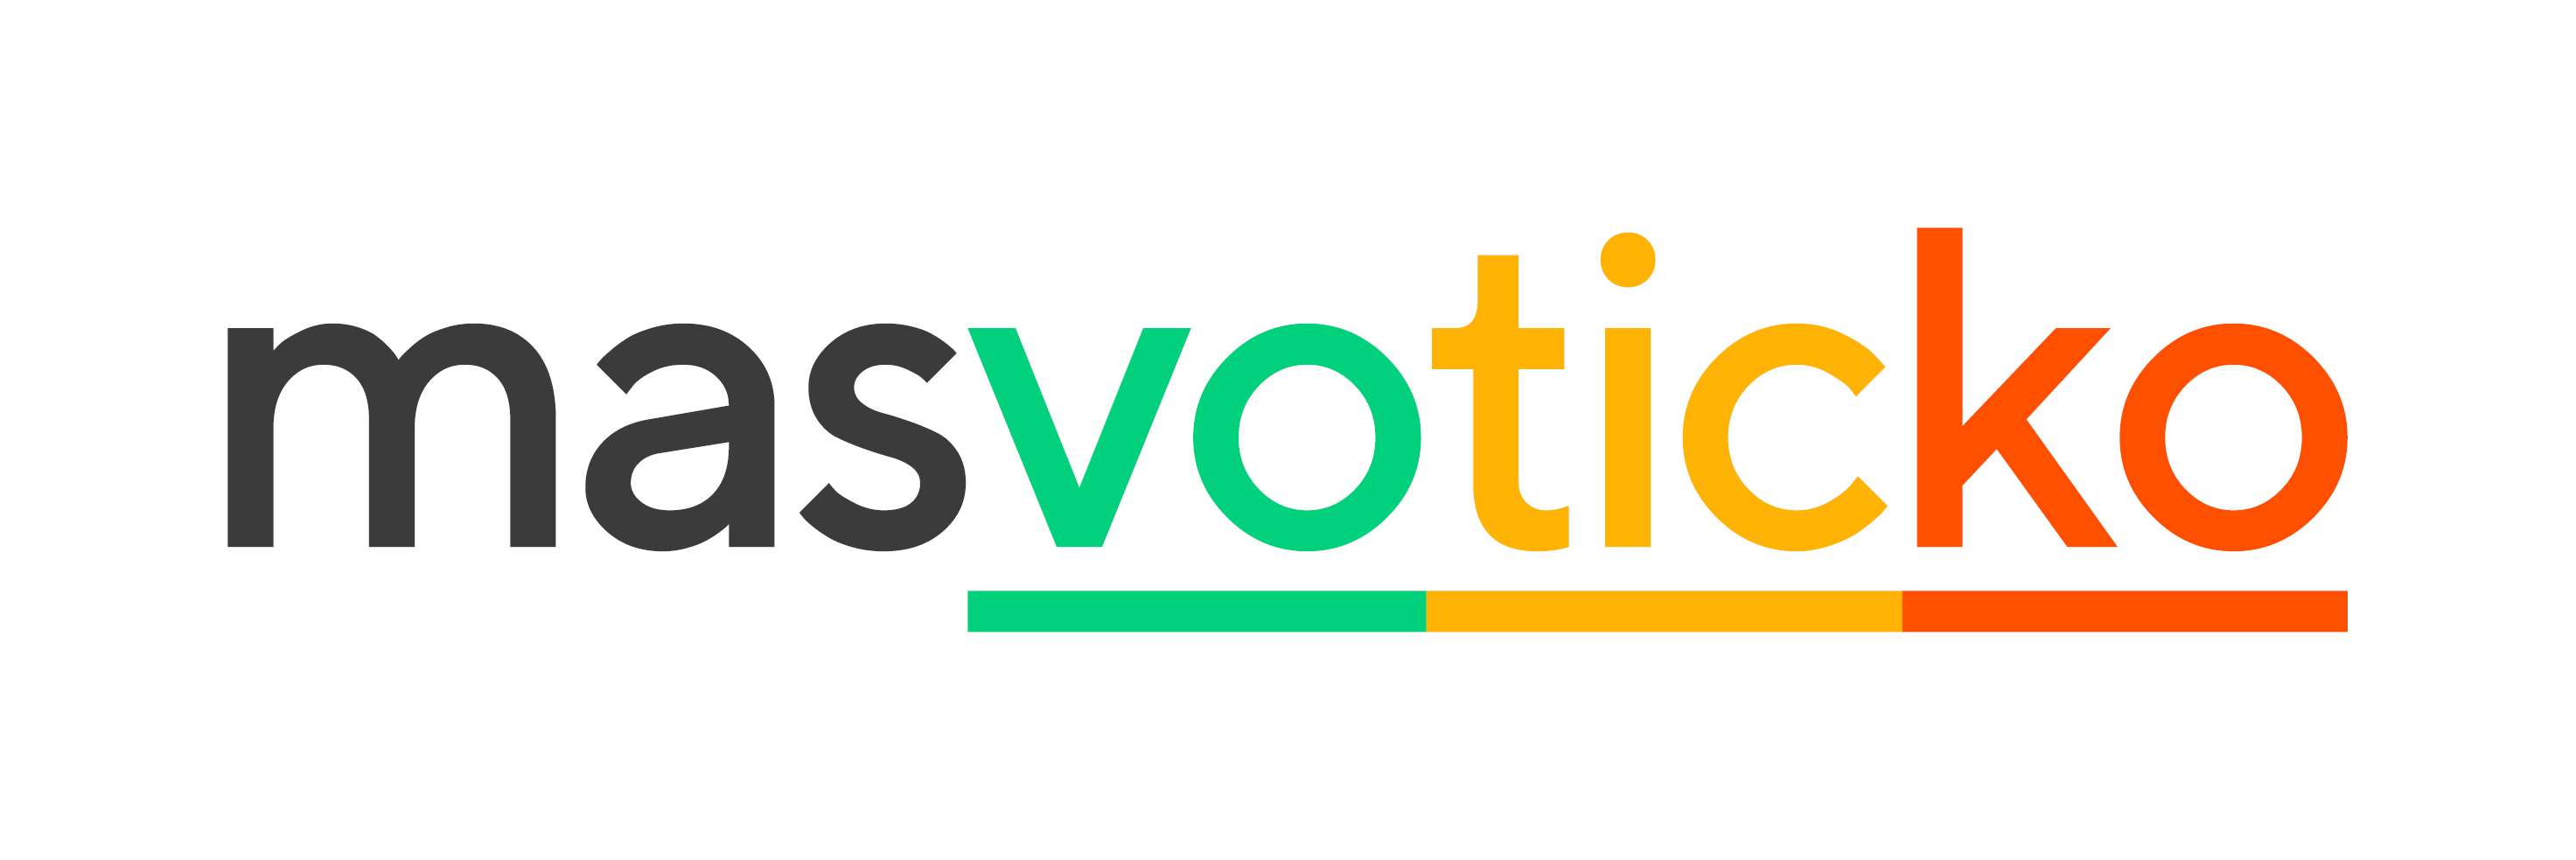 masvoticko logo barevne high online